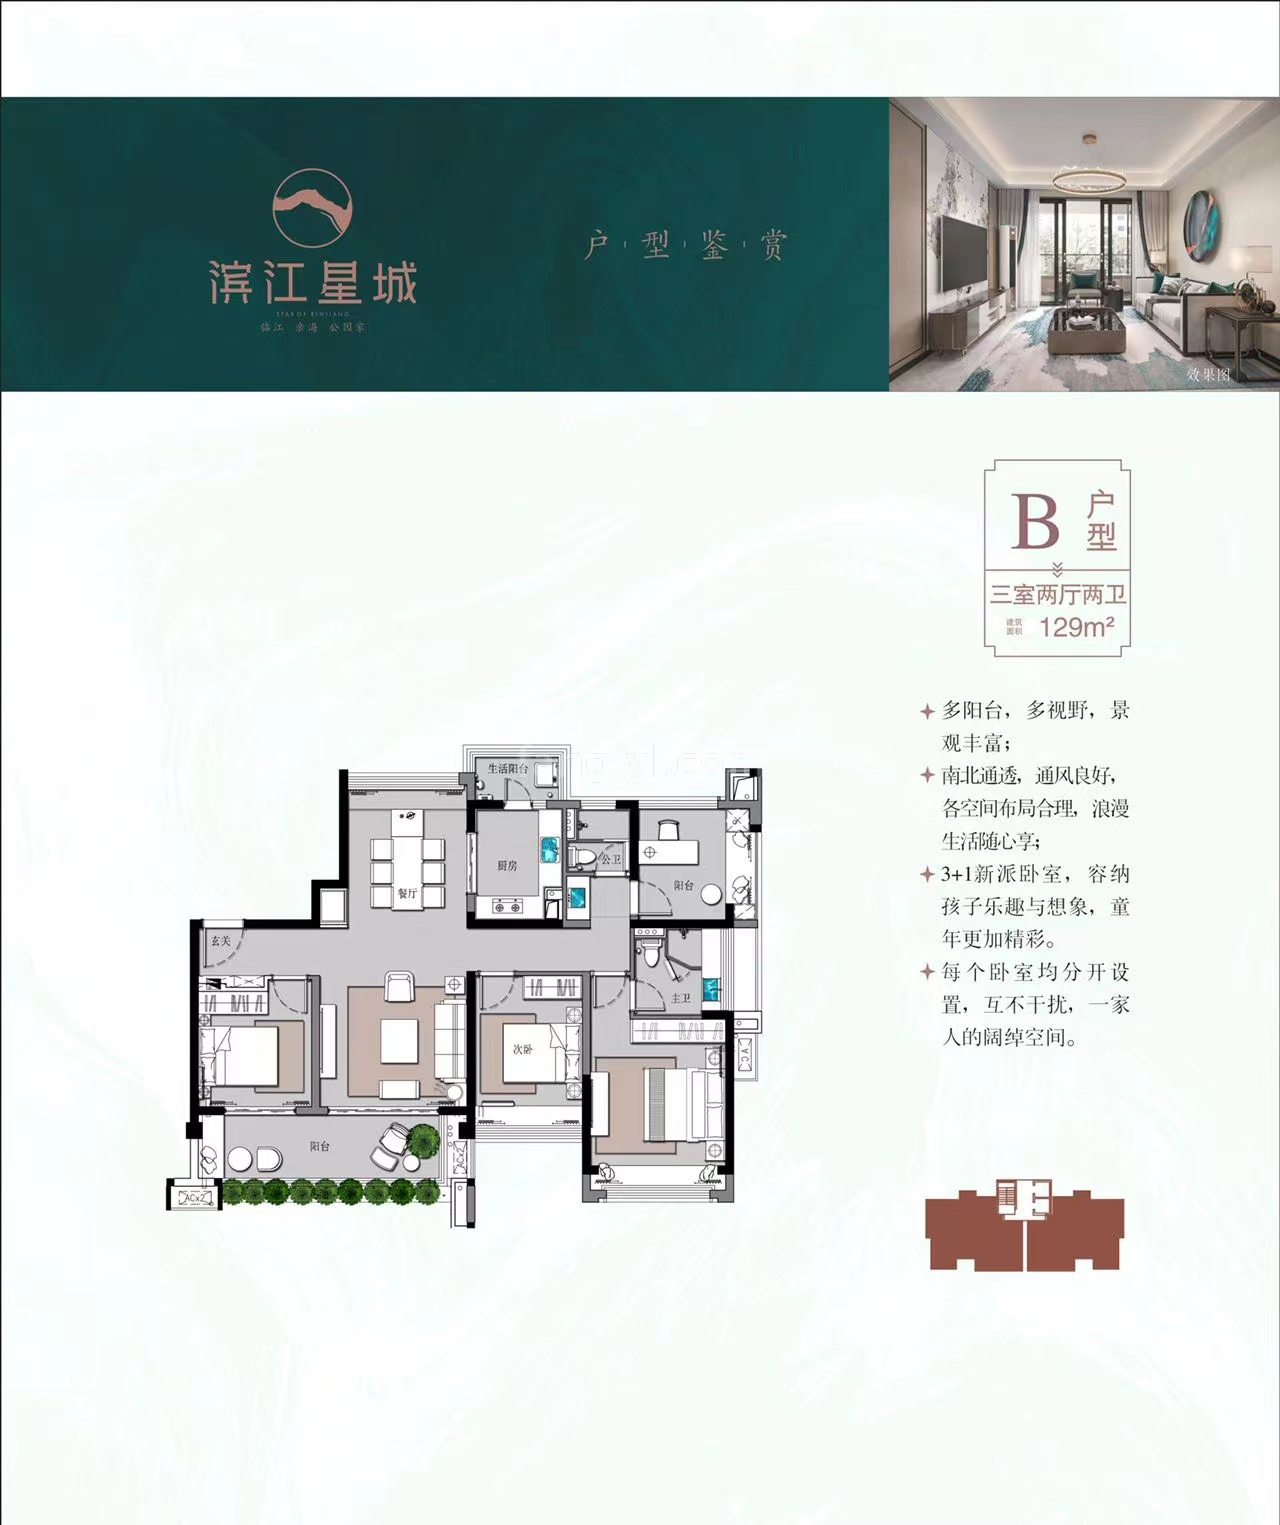 滨江星城 高层 B户型 3房2厅2卫 建筑面积129㎡